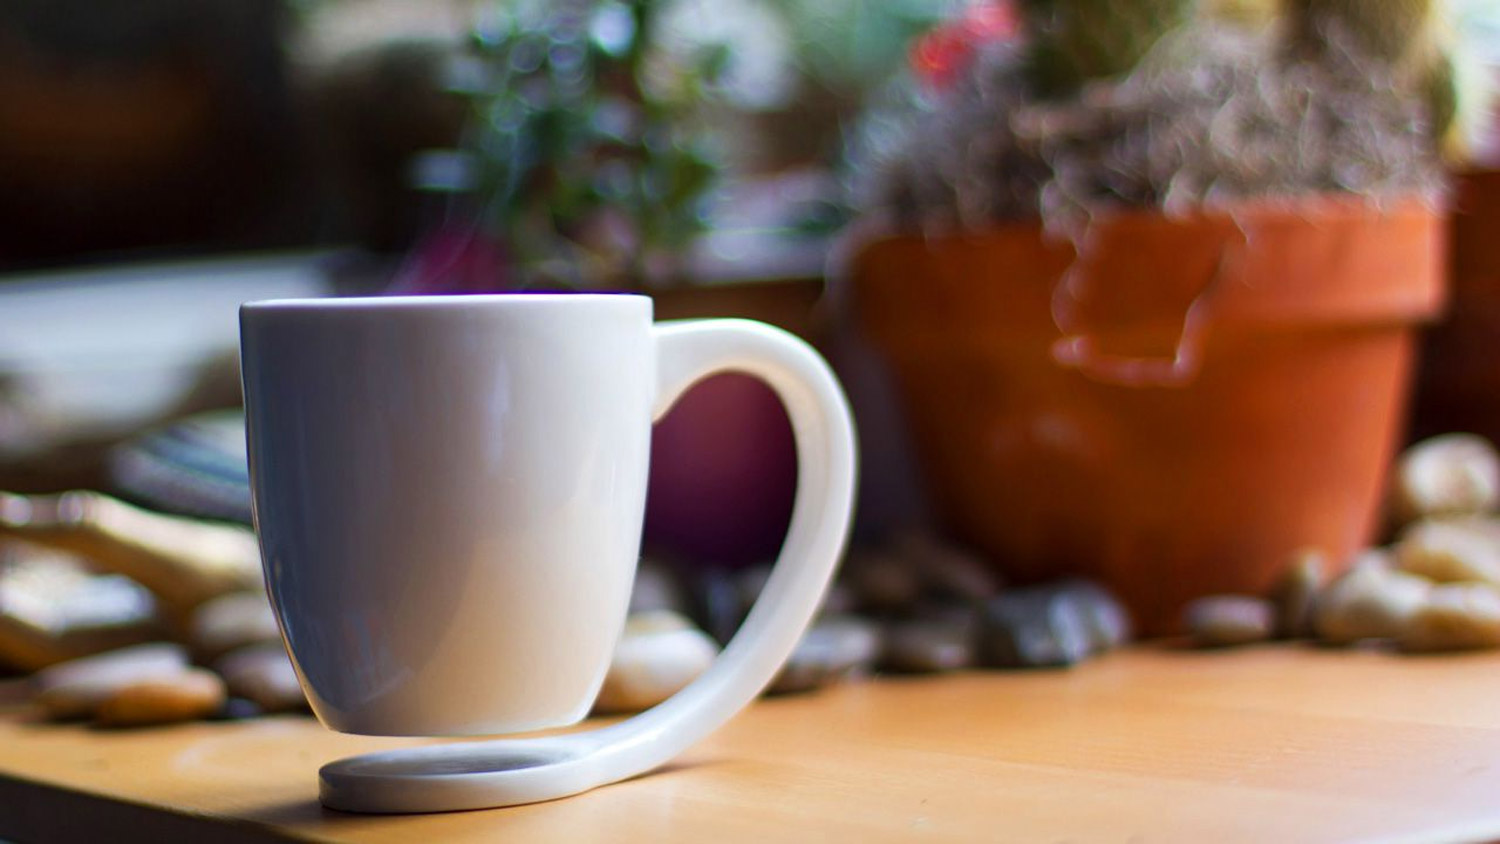 The Floating Coffee Mug - Hovering mug